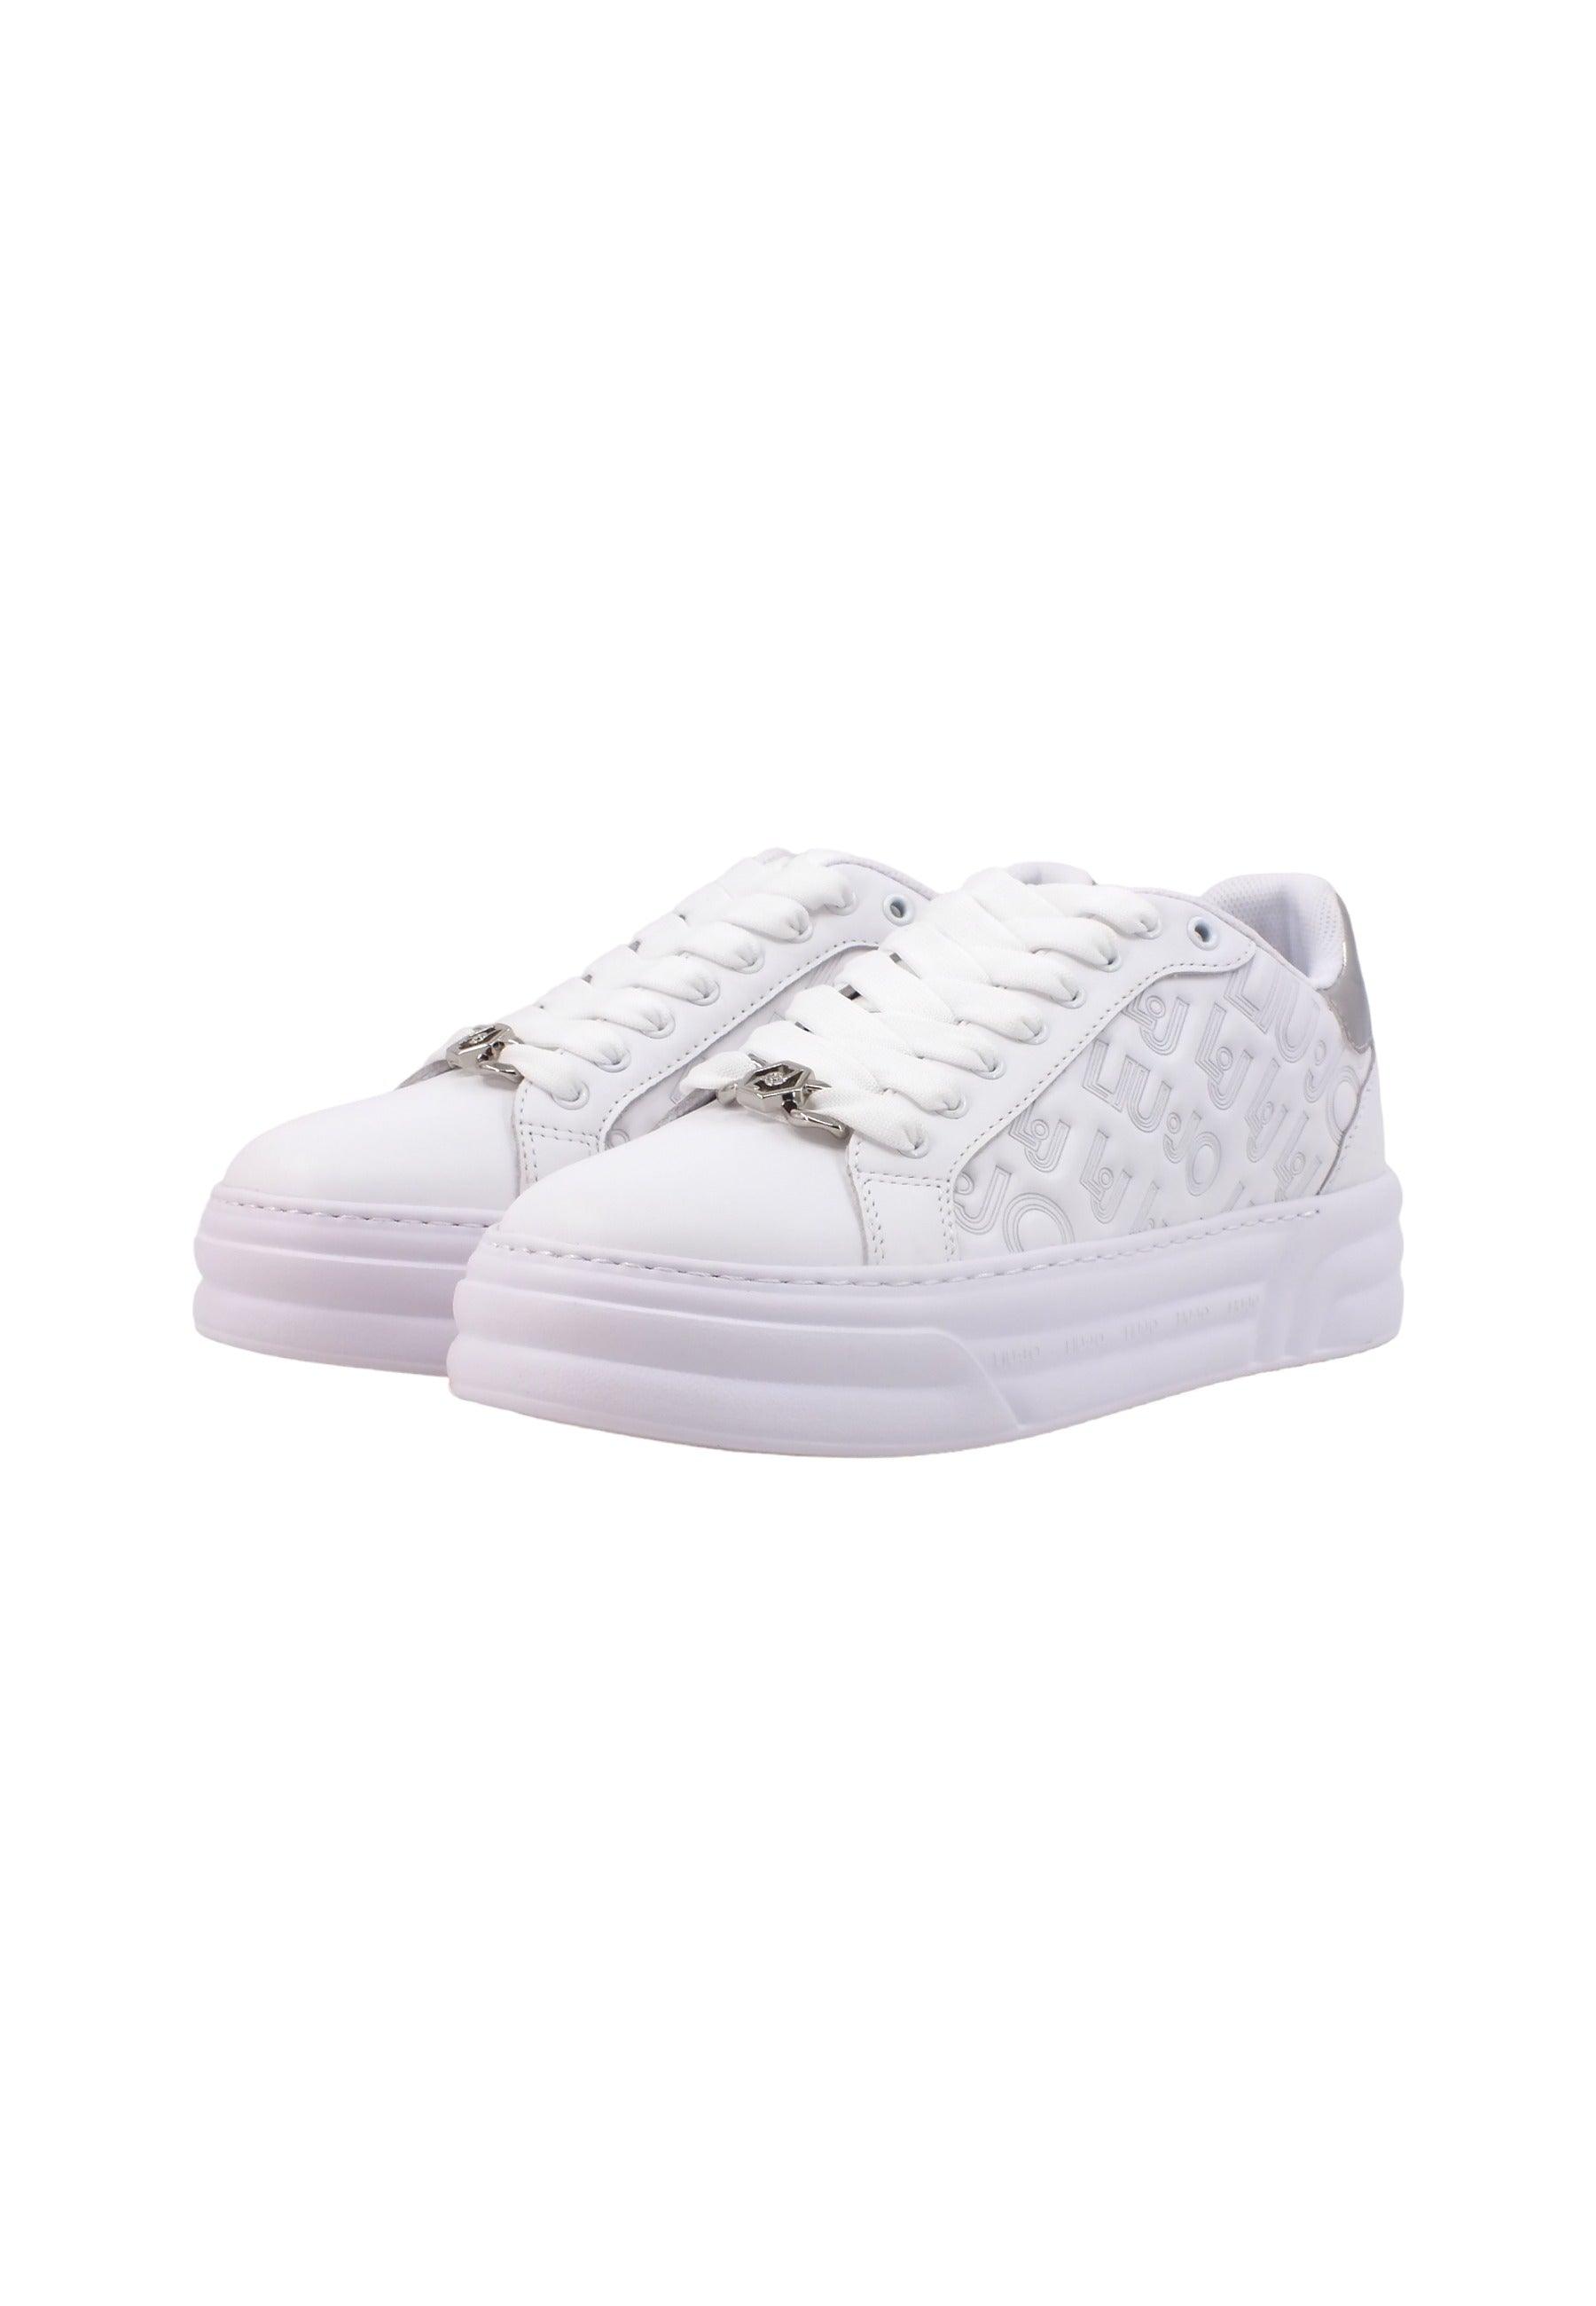 LIU JO Cleo 20 Sneaker Donna White BF3015PX144 - Sandrini Calzature e Abbigliamento